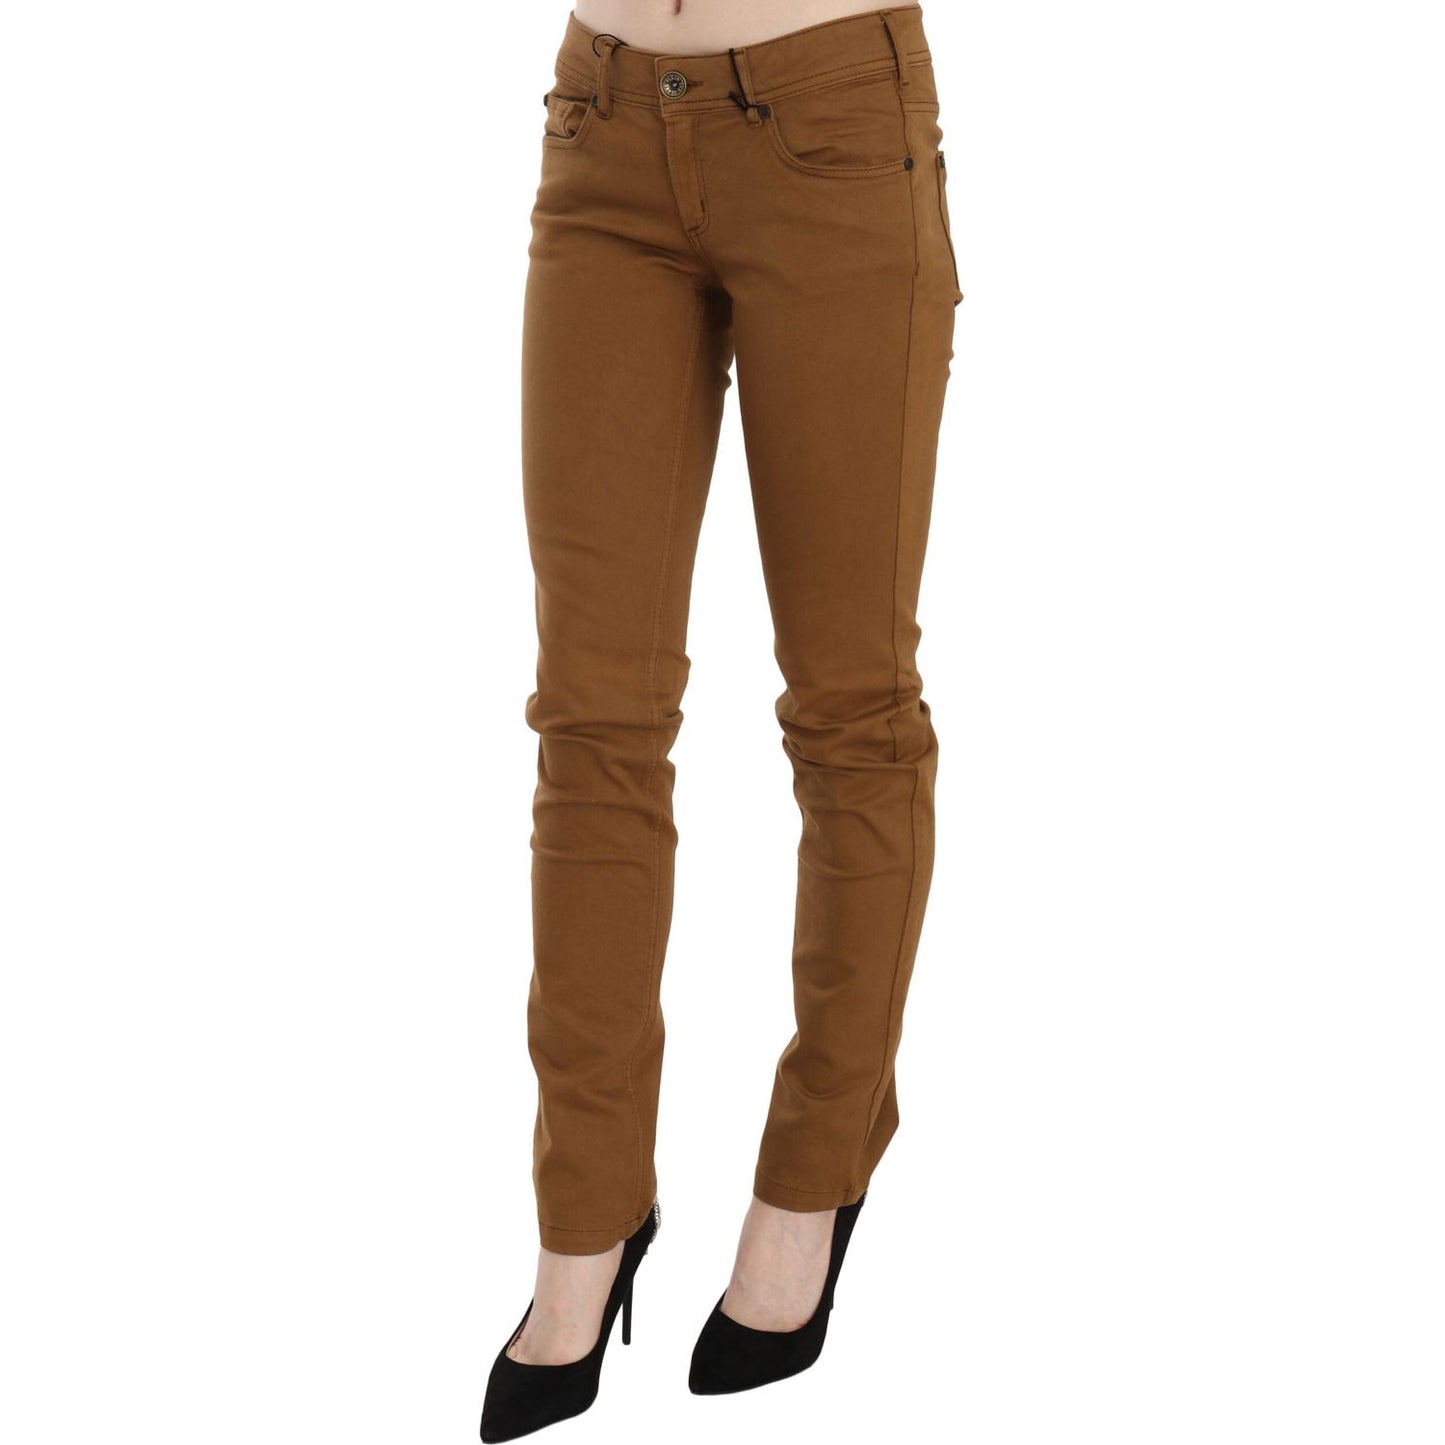 PLEIN SUD Chic Mid Waist Skinny Cotton Pants brown-cotton-mid-waist-skinny-slim-fit-denim-jeans